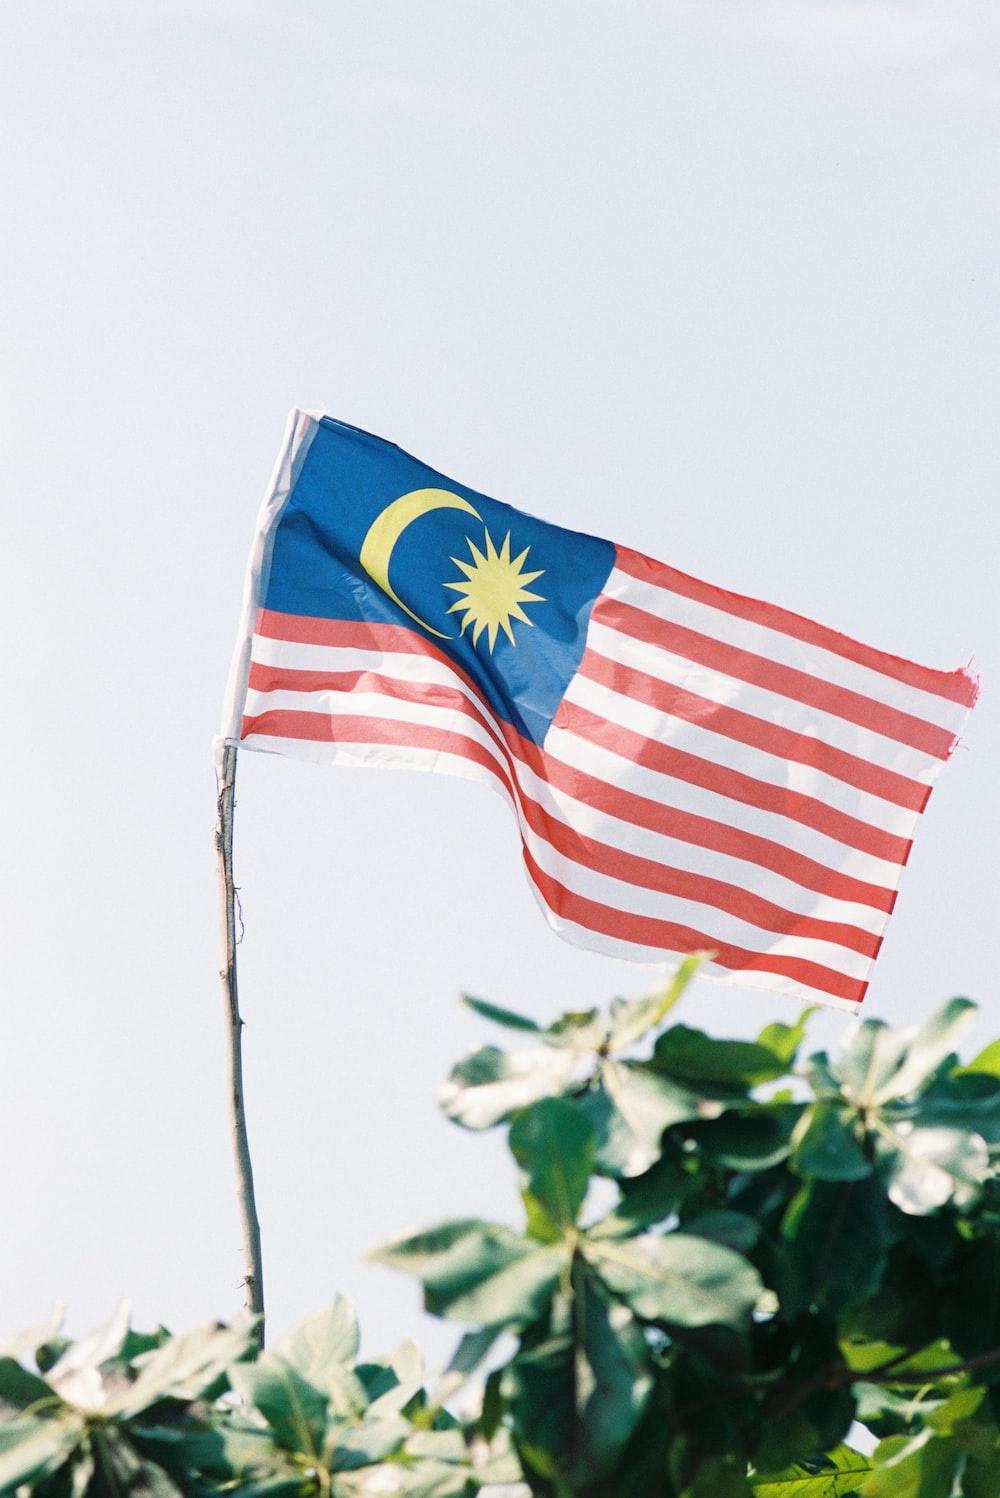 Malaysia Flag Wallpapers